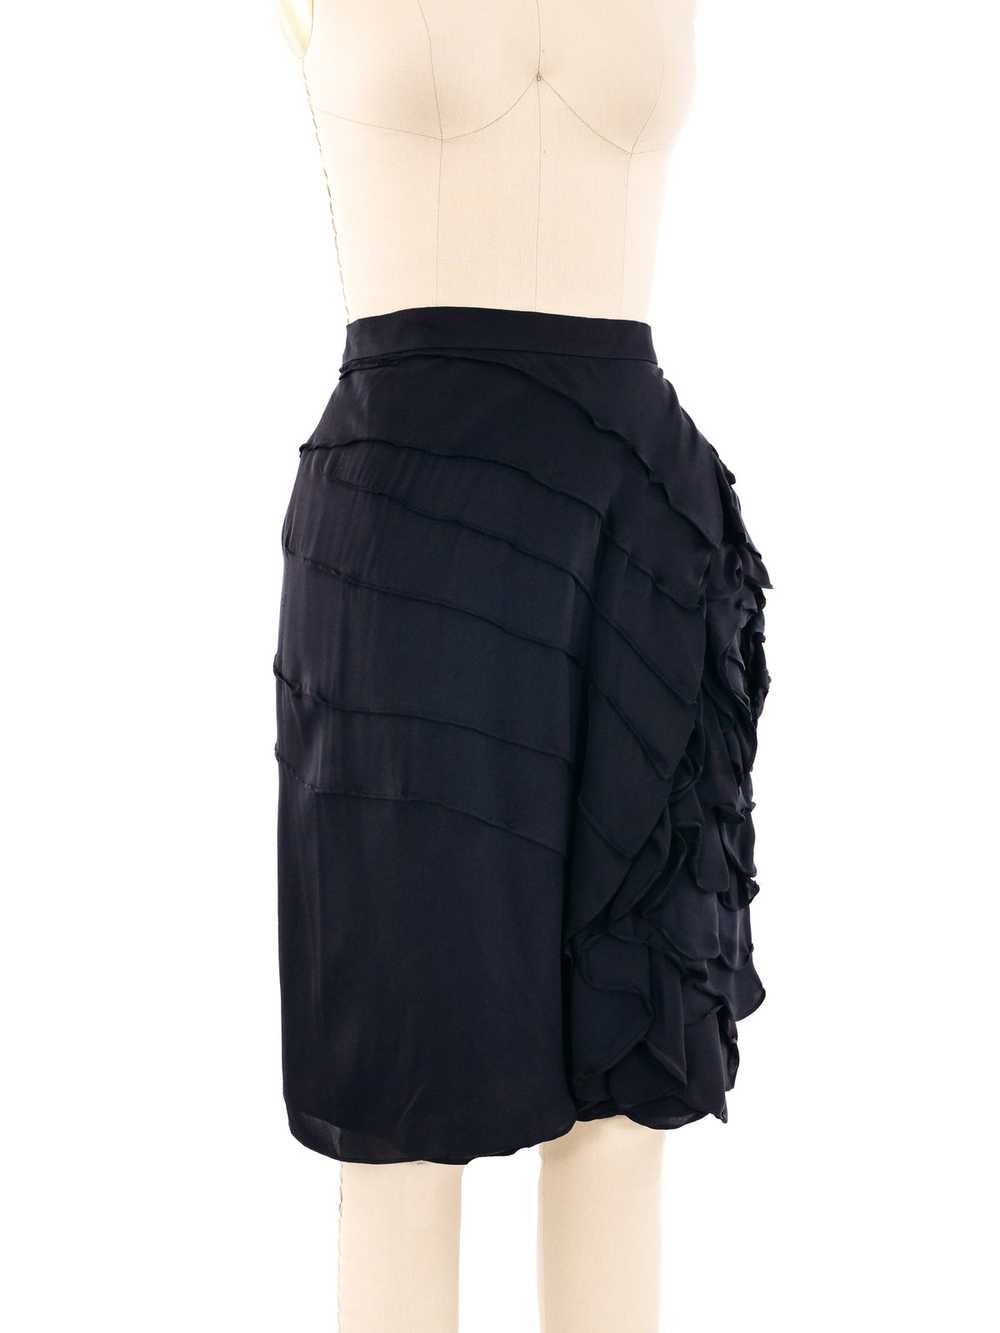 Yves Saint Laurent Ruffled Silk Skirt - image 3